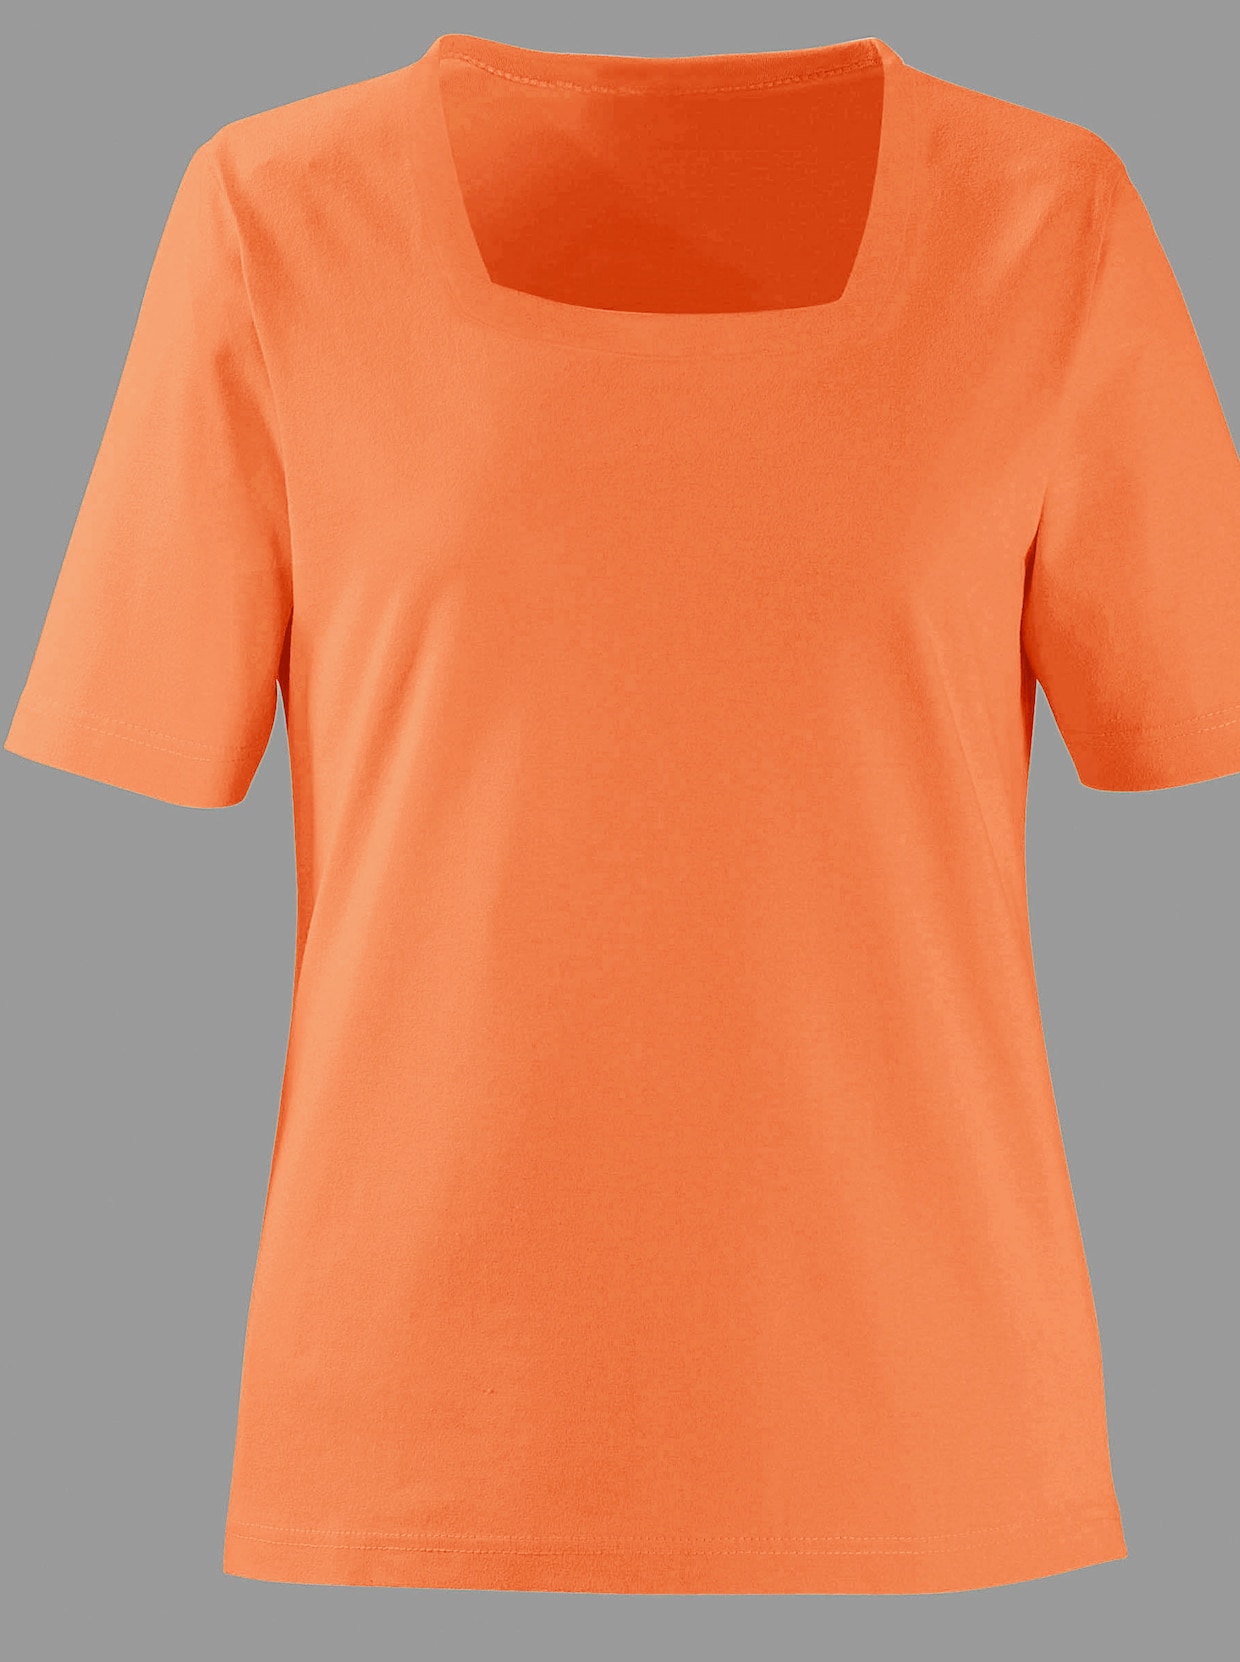 Tričko s krátkým rukávem - oranžová